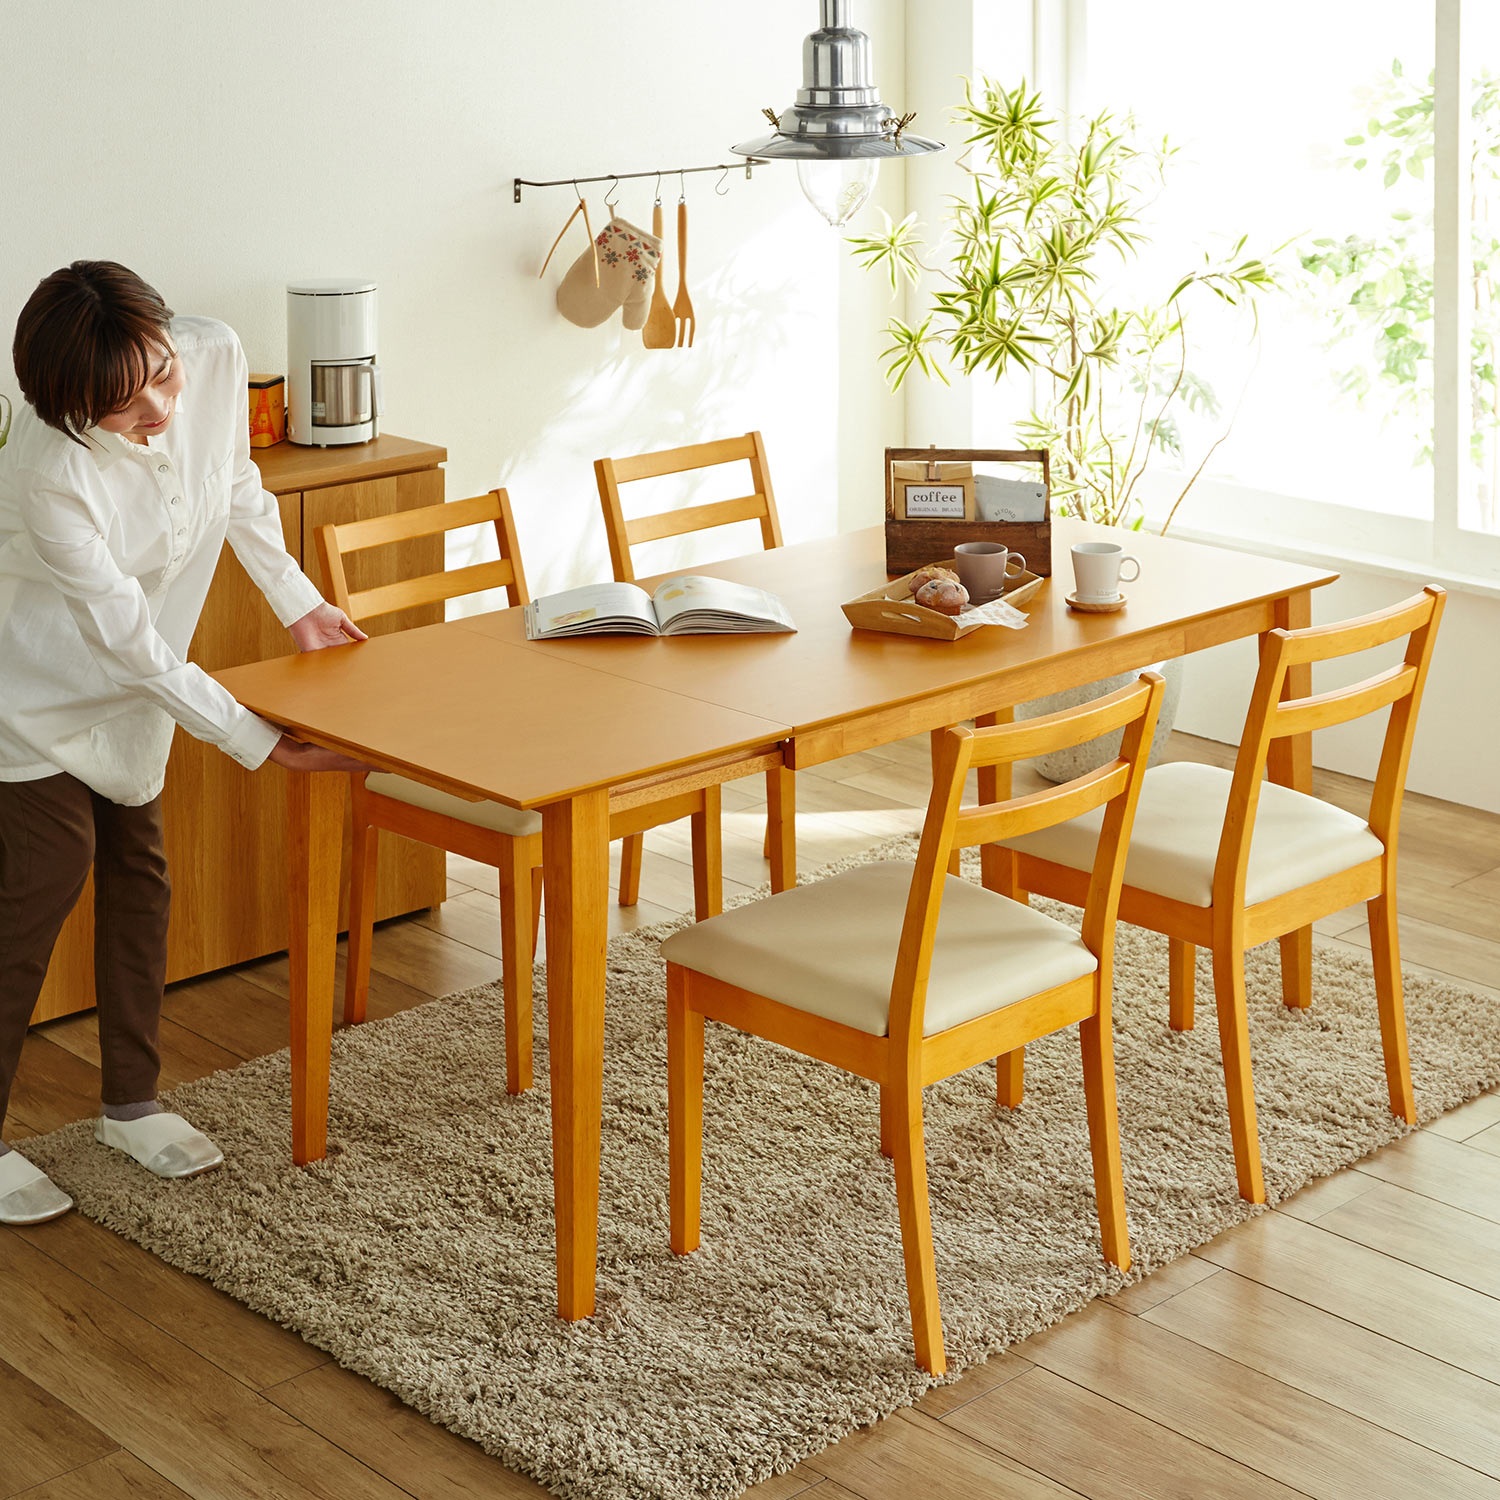 メルべゾンのダイニングテーブル•椅子セット - 東京都の家具